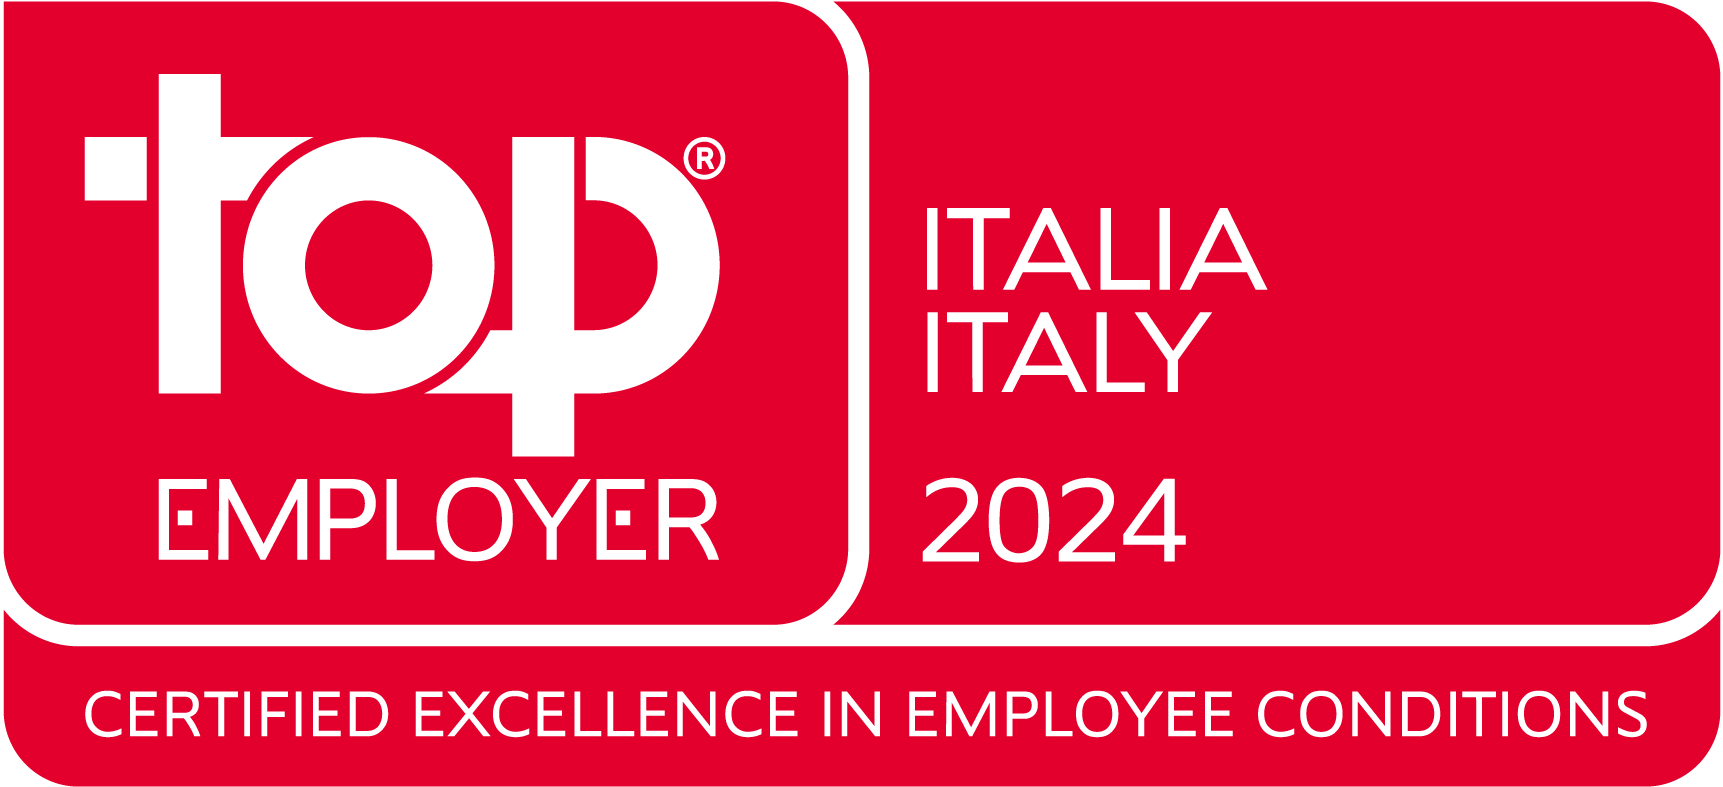 Top Employer Italia 2024